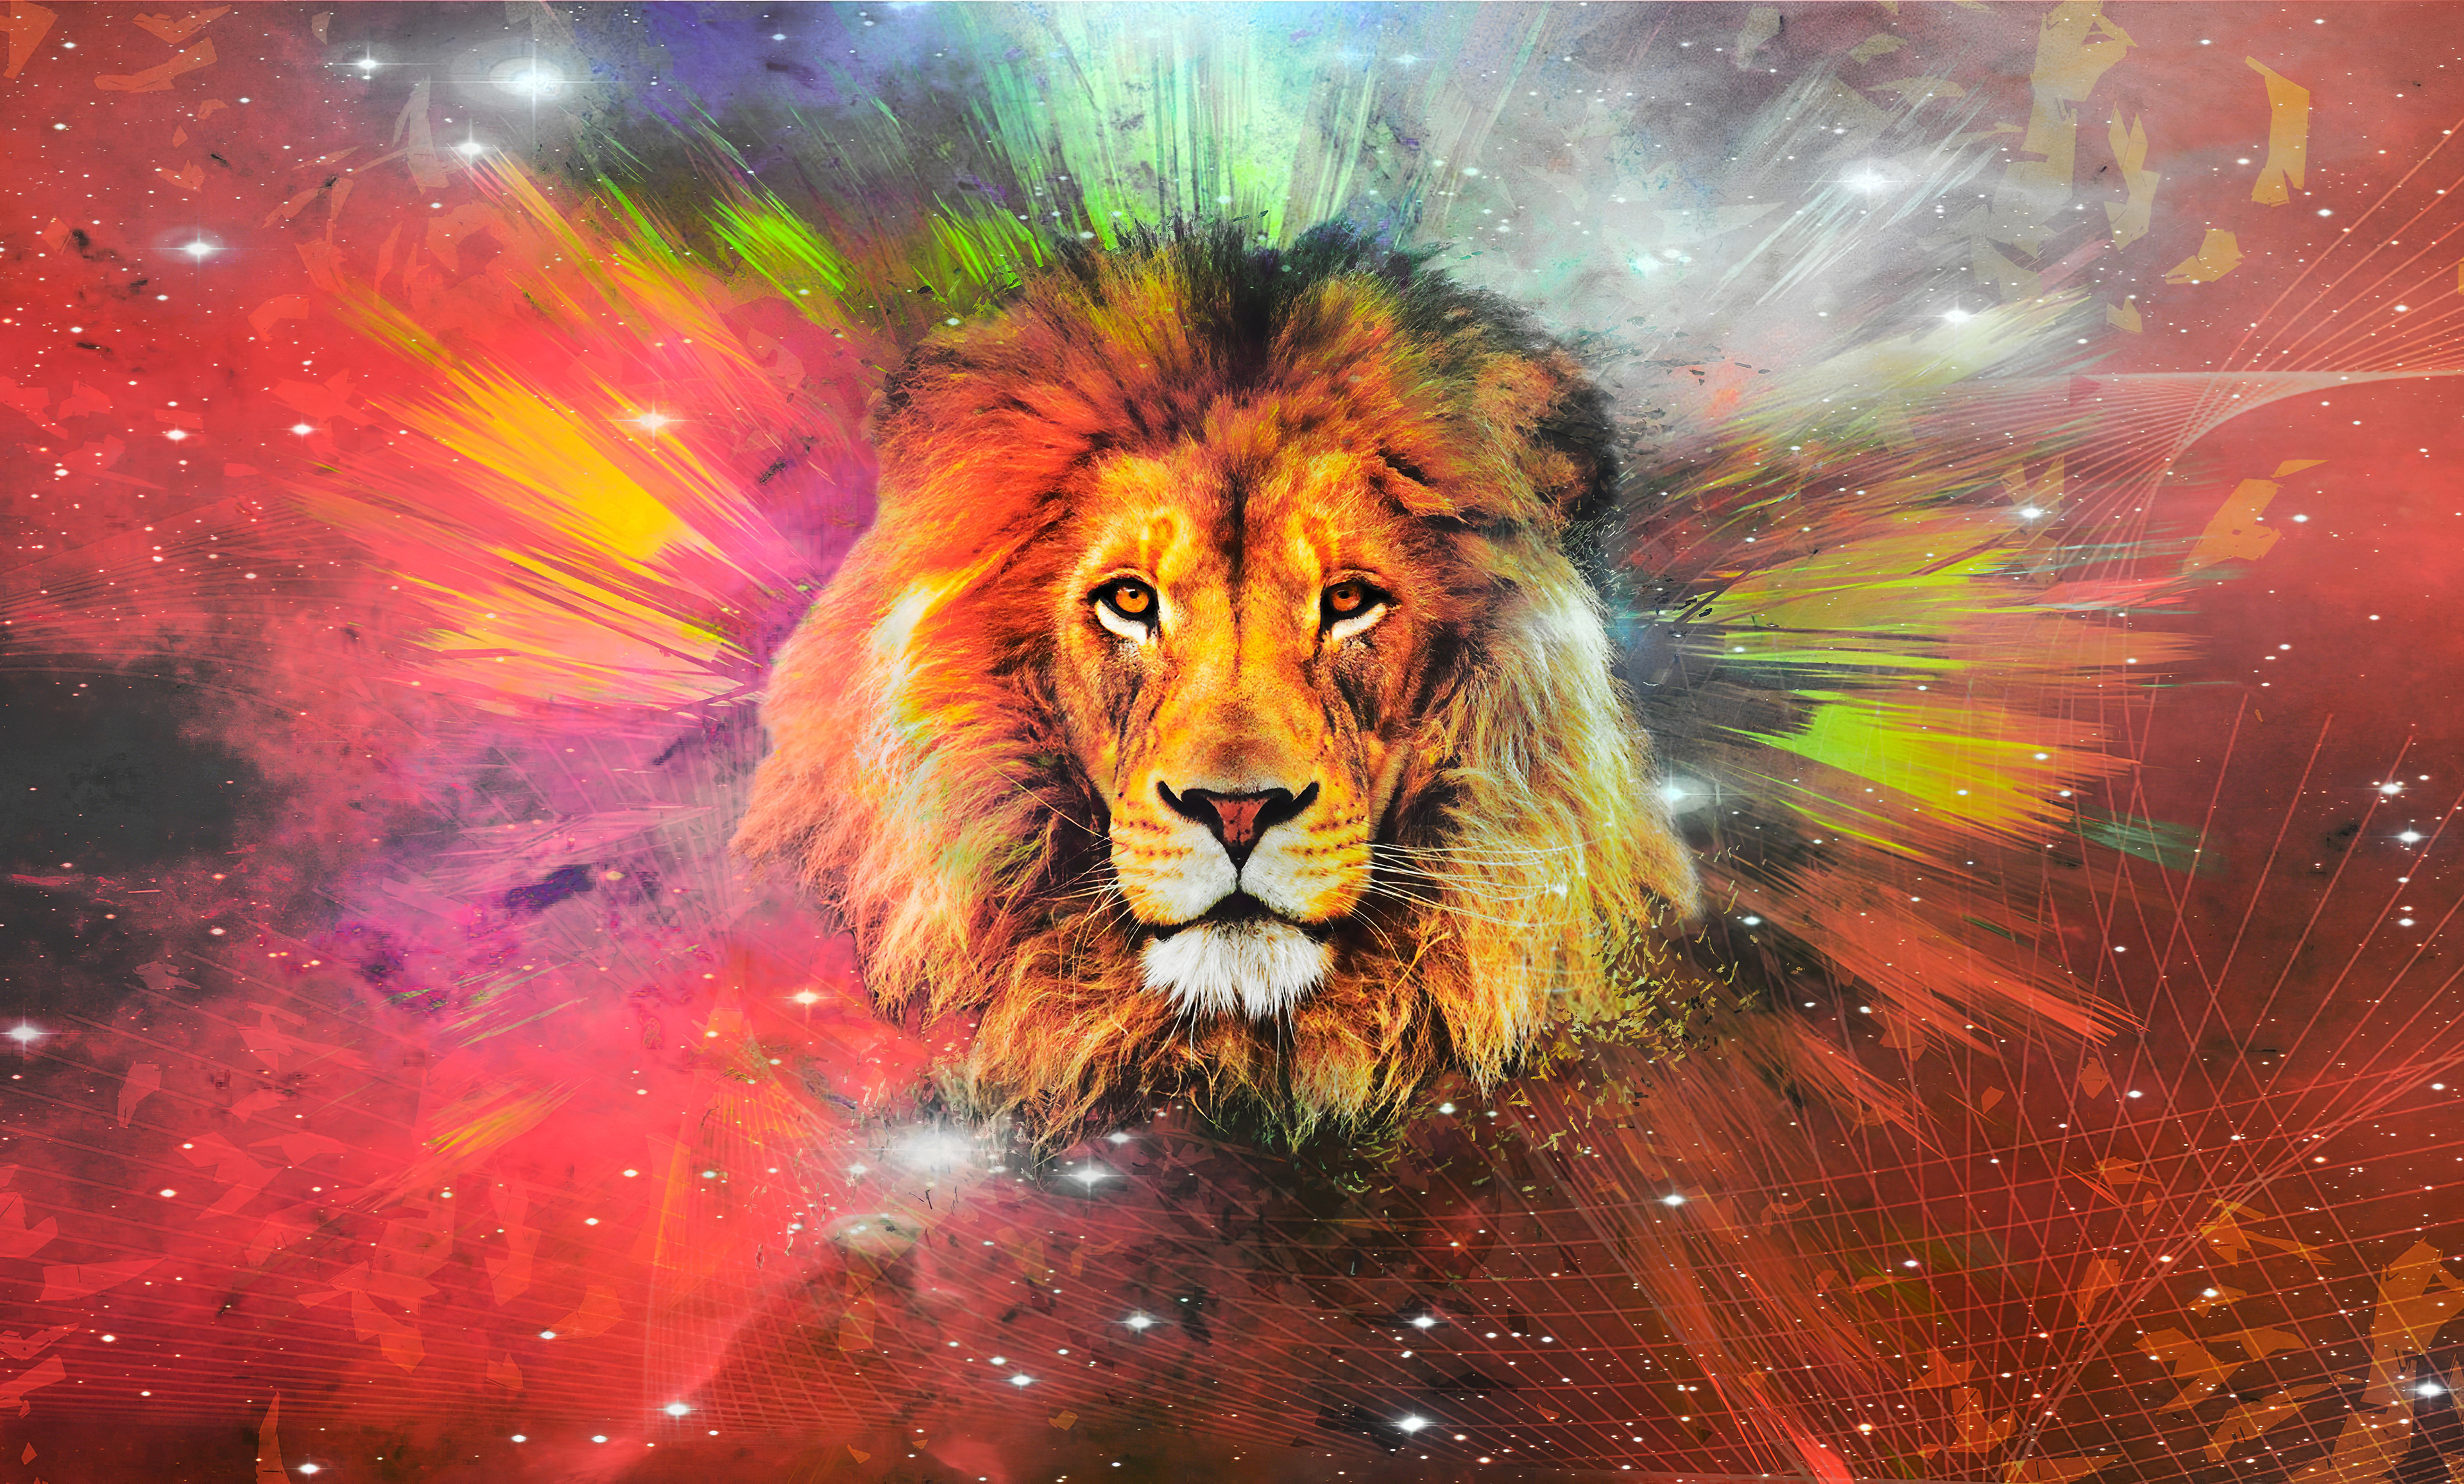 レオンのhd壁紙,ライオン,野生動物,ネコ科,大きな猫,マサイライオン